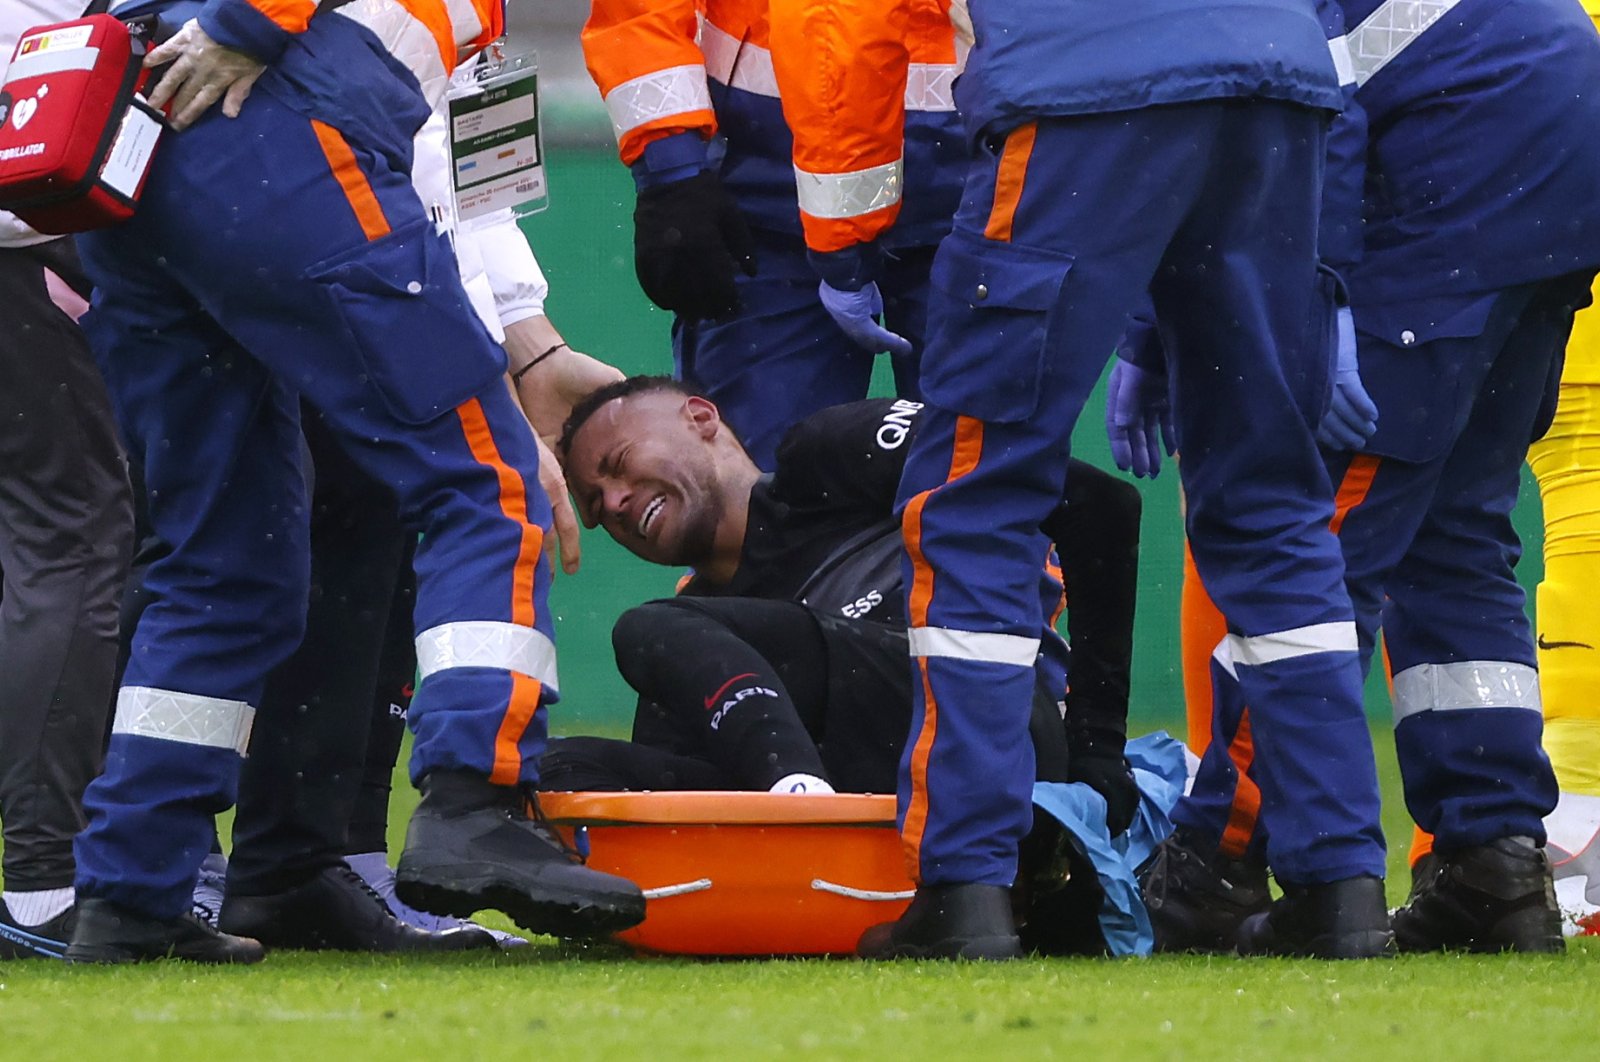 Bintang PSG Neymar absen hingga 8 minggu karena cedera pergelangan kaki